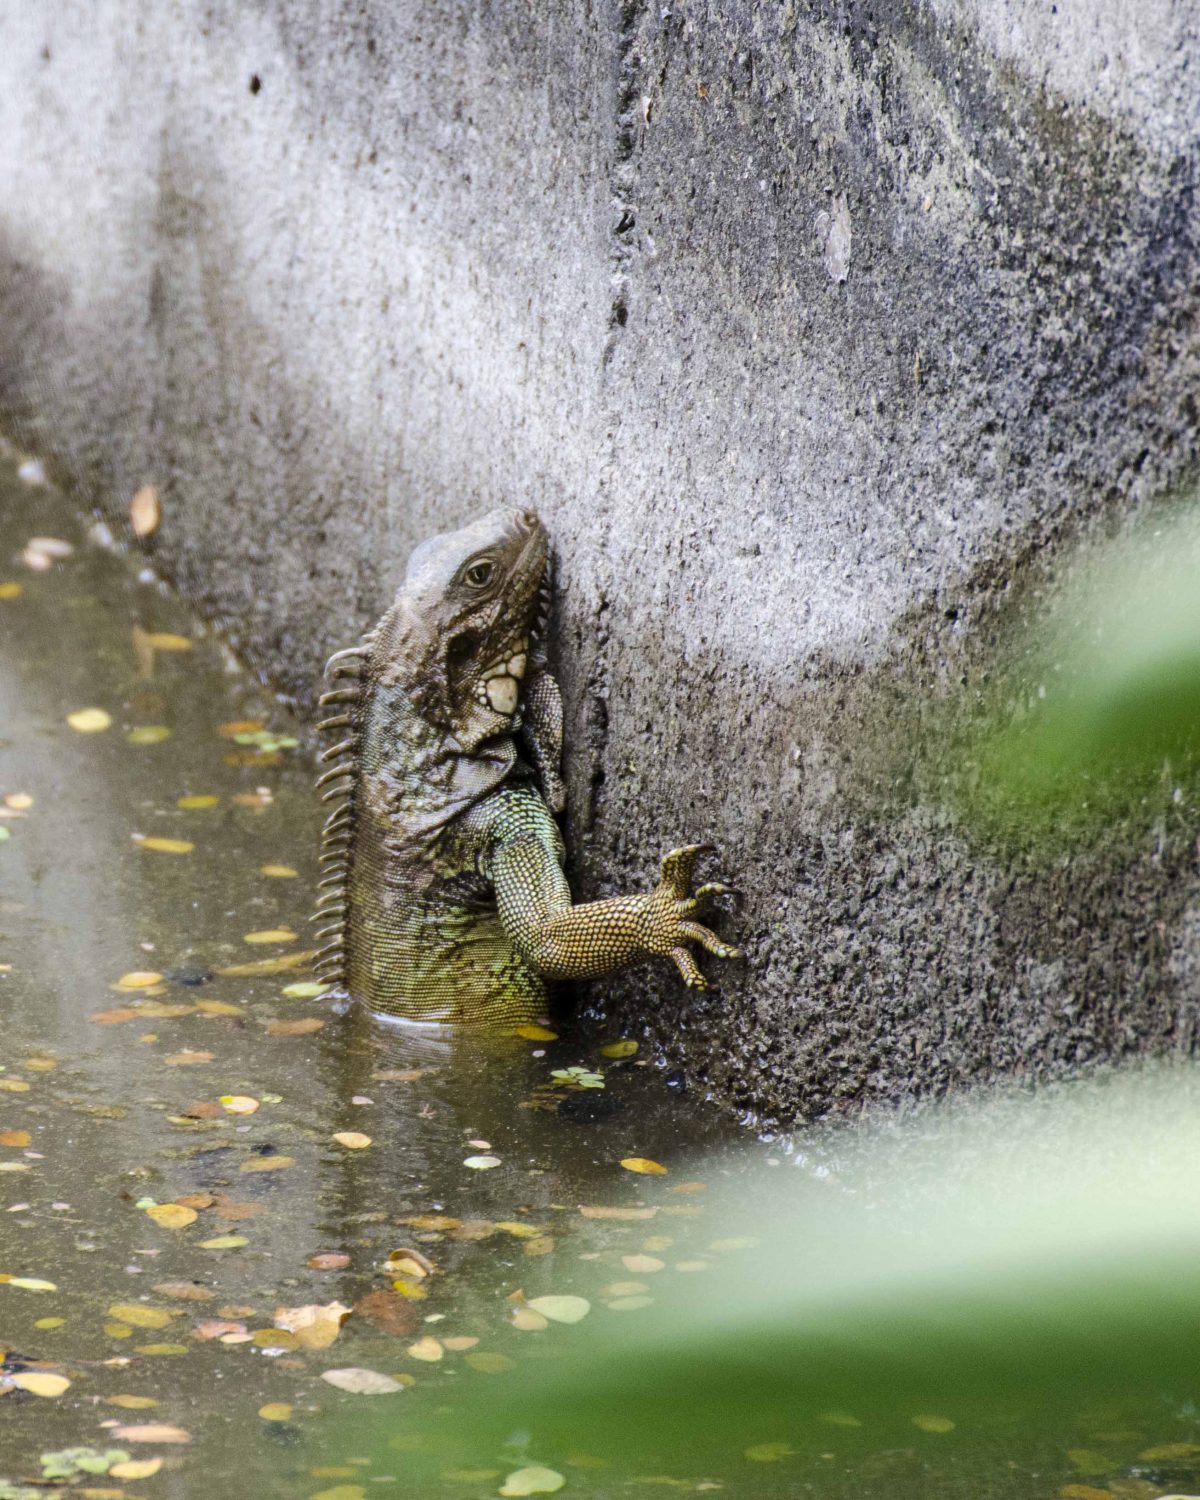 Iguana, Parque Histórico, Guayaquil, Ecuador